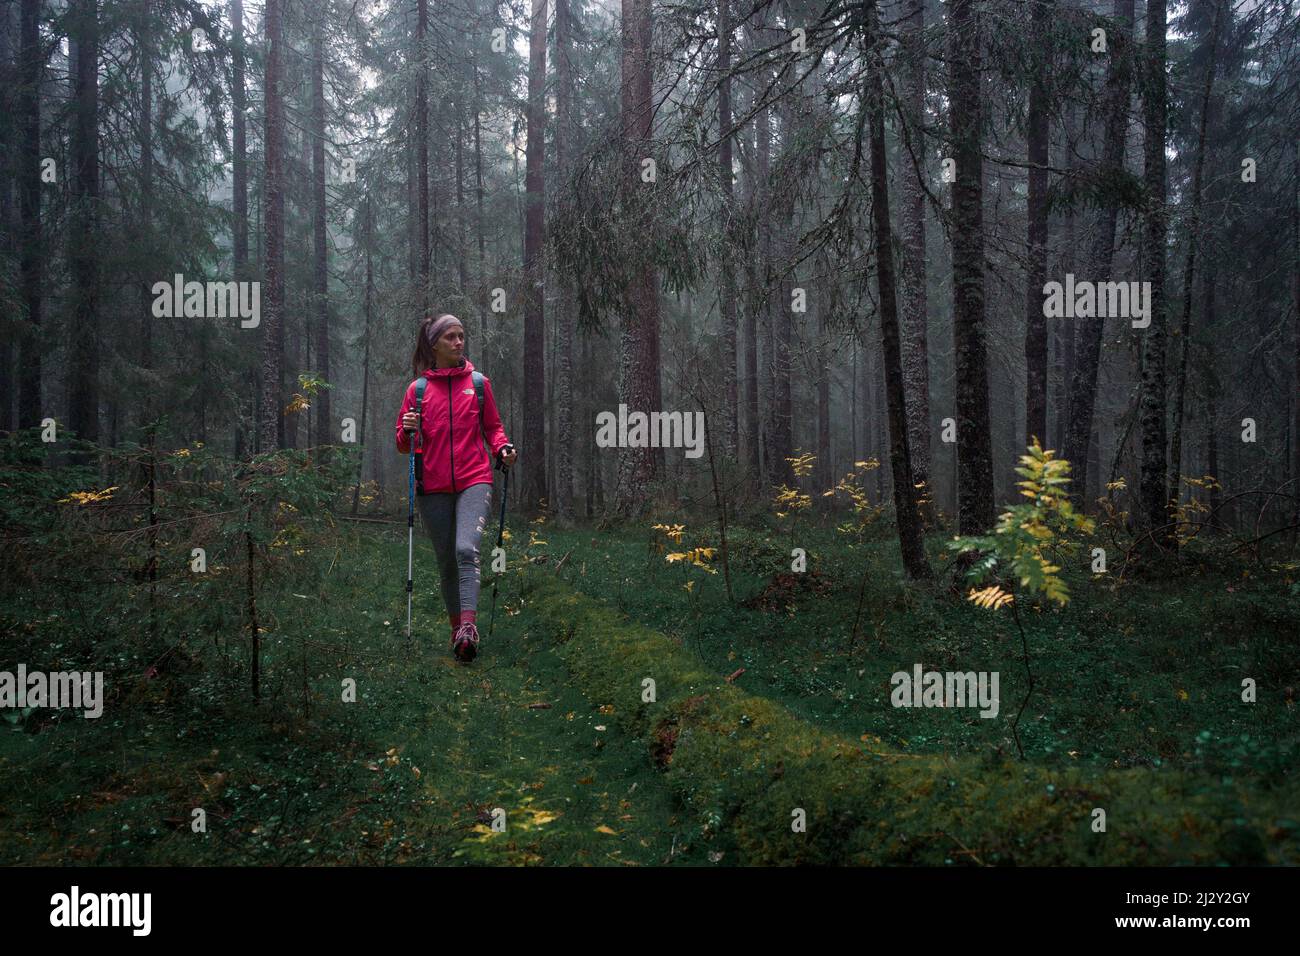 Une femme fait des randonnées dans la forêt de conifères brumeux et mossy du parc national de Skuleskogen, dans l'est de la Suède Banque D'Images